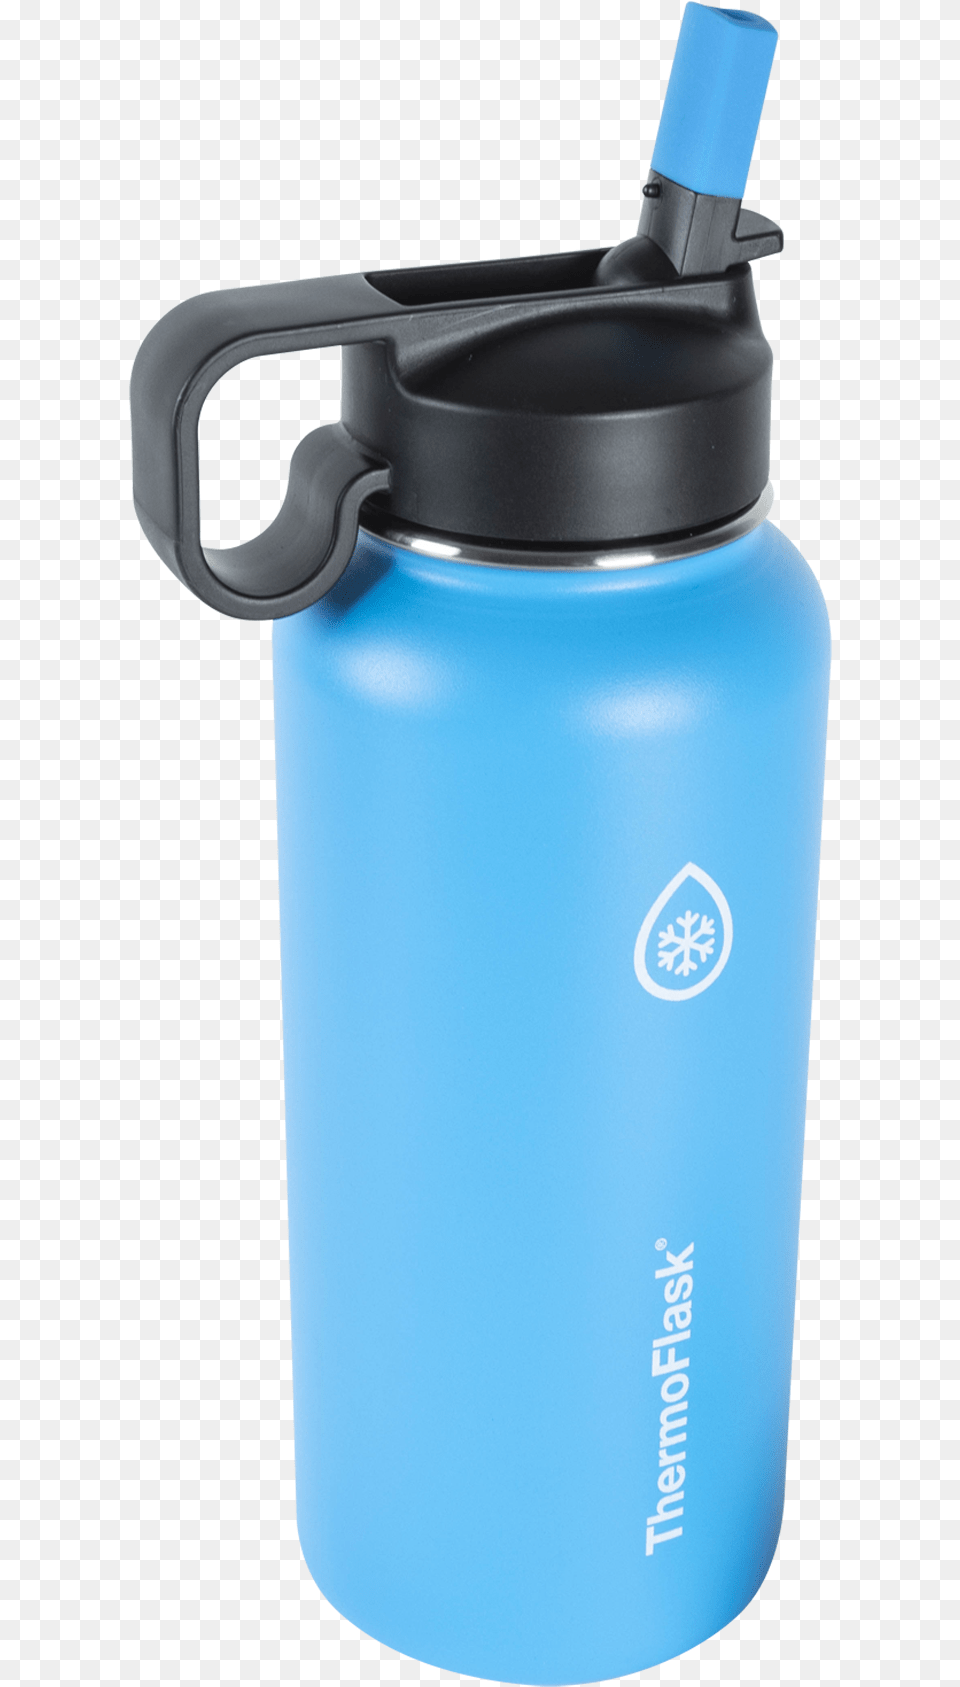 Water Bottle, Water Bottle, Shaker Png Image